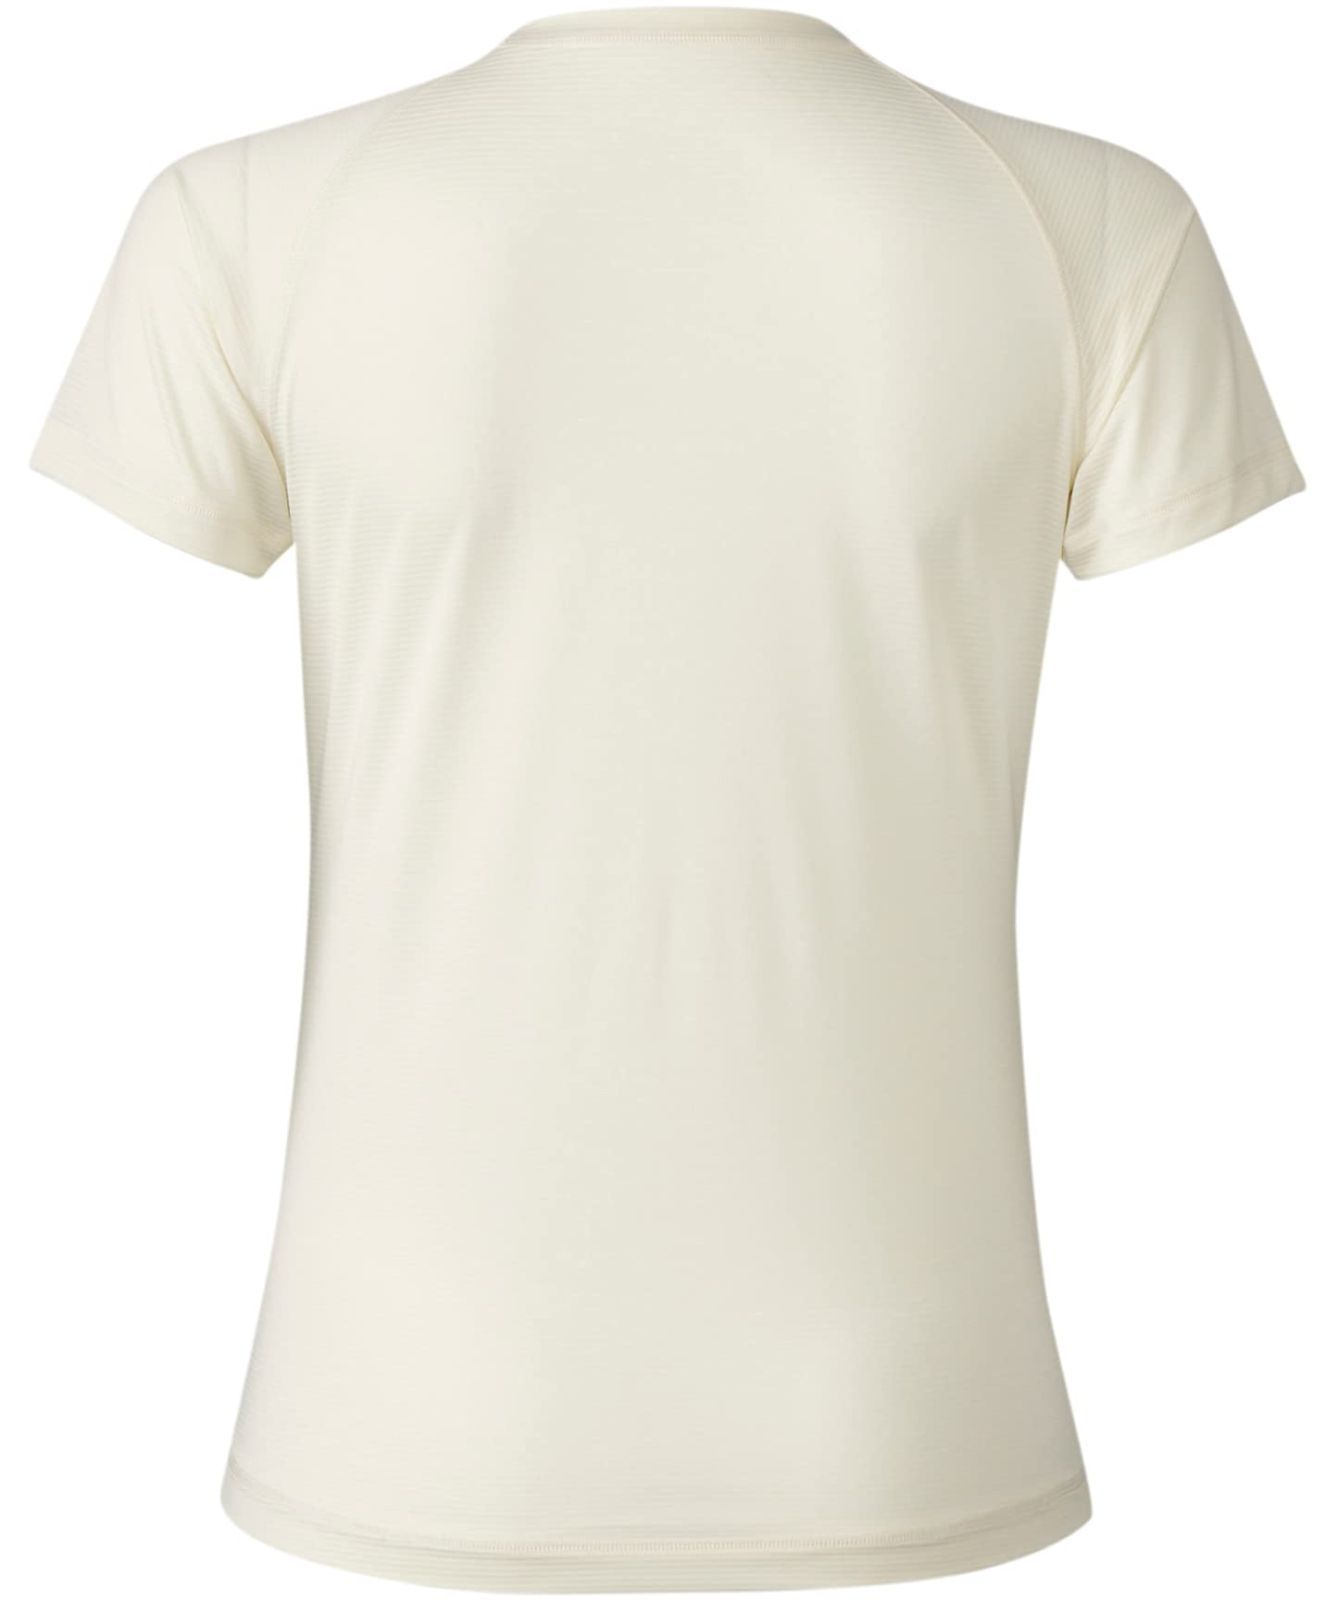 シーダブリューエックスワコール Tシャツ半袖 半袖 吸汗速乾 UVカット